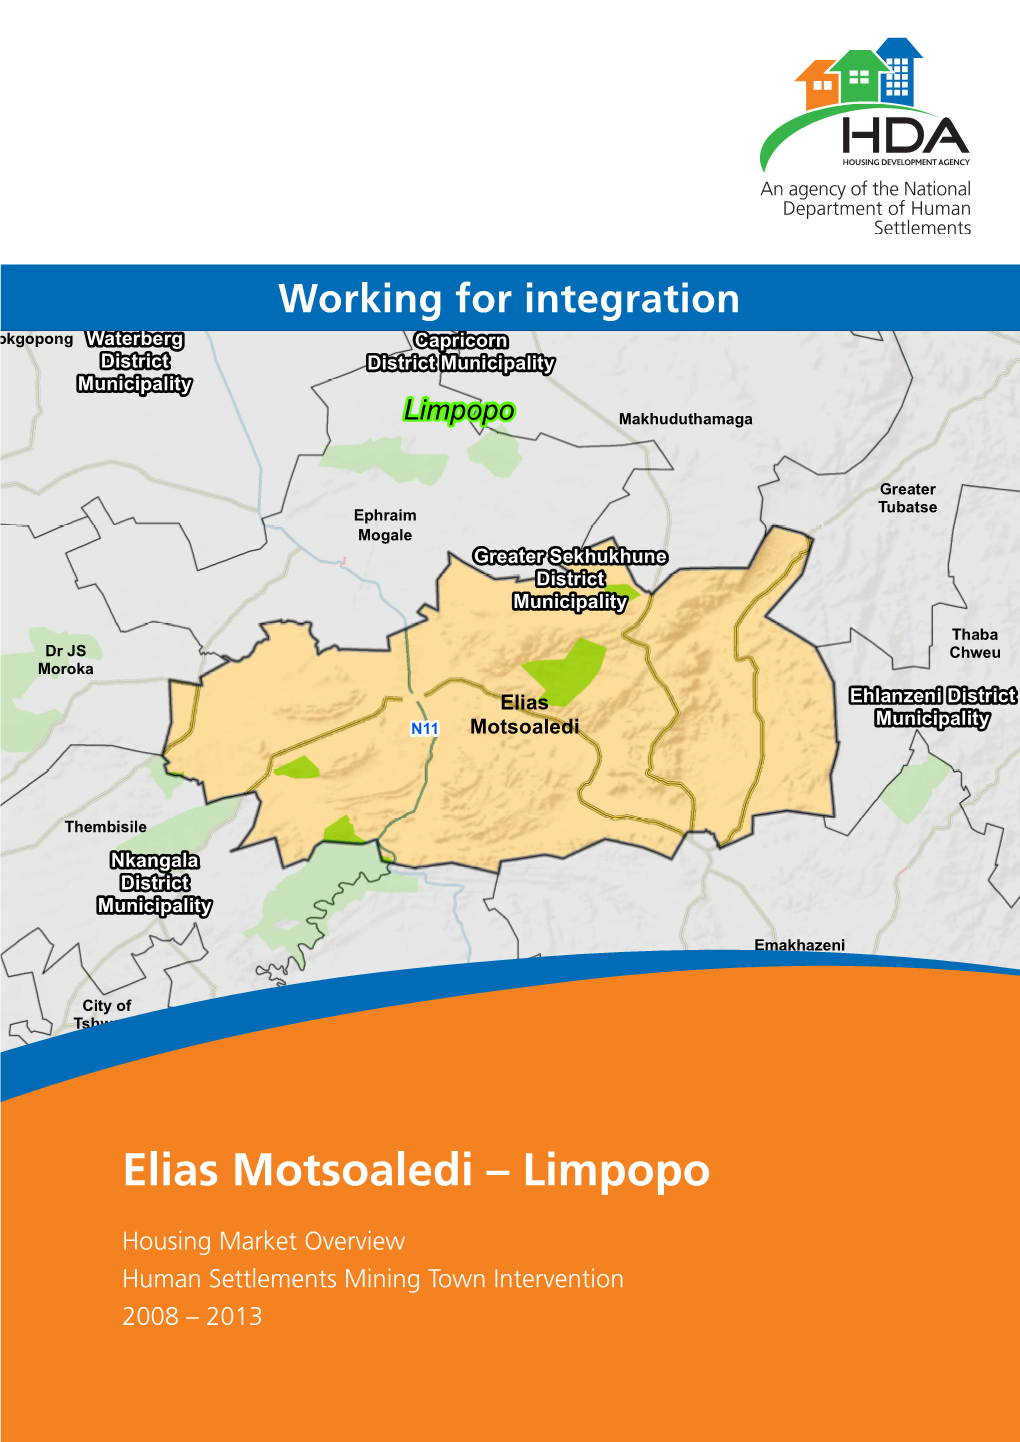 Elias Motsoaledi – Limpopo